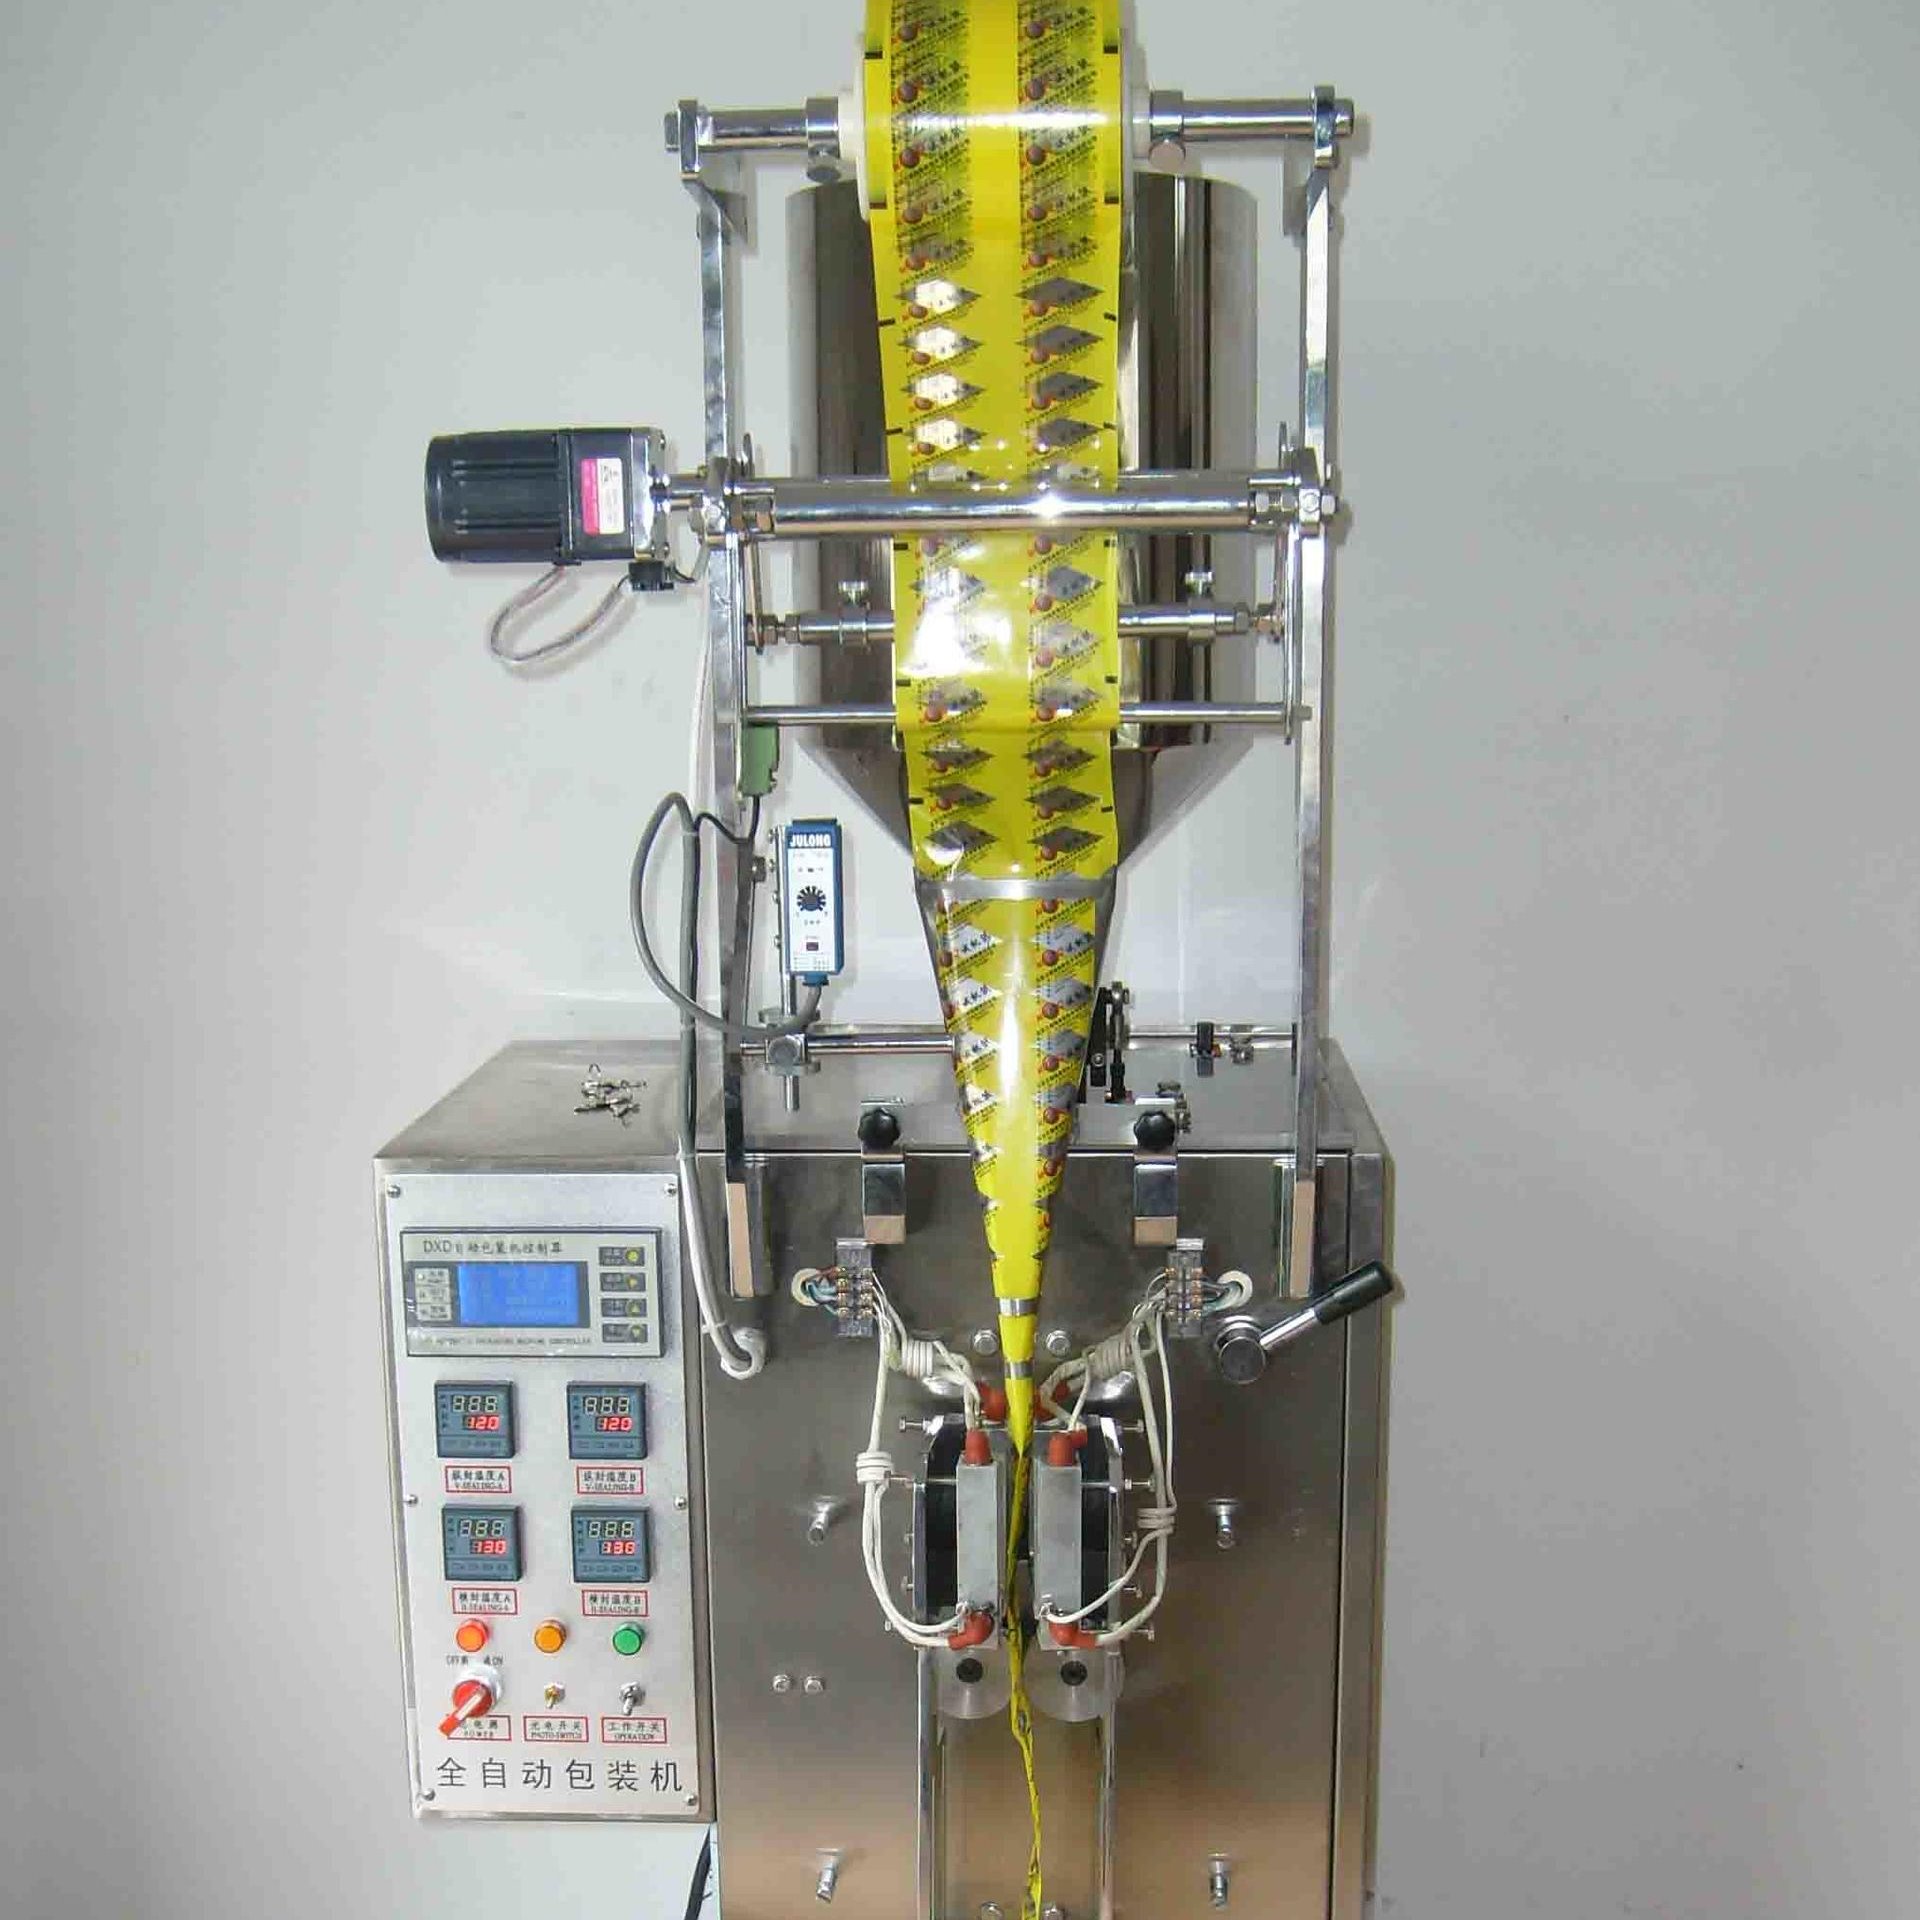 YunChi/DXDL60C杀虫剂包装机 液体包装机 除草剂包装机 杀虫剂全自动包装机(图)图片